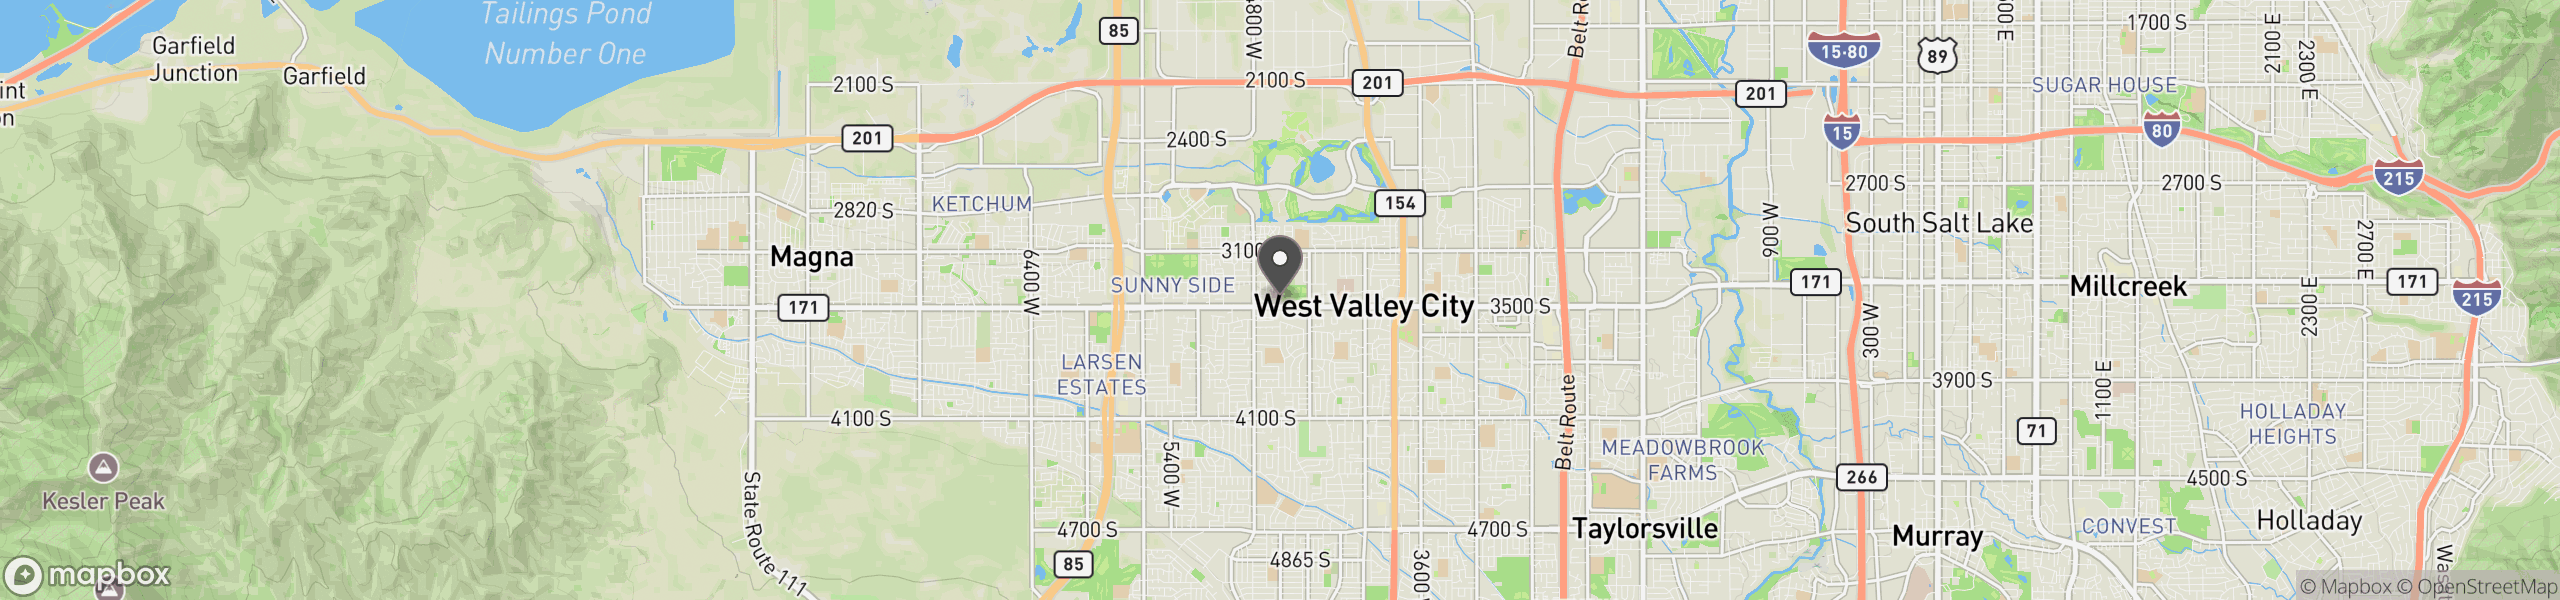 West Valley City, UT 84120